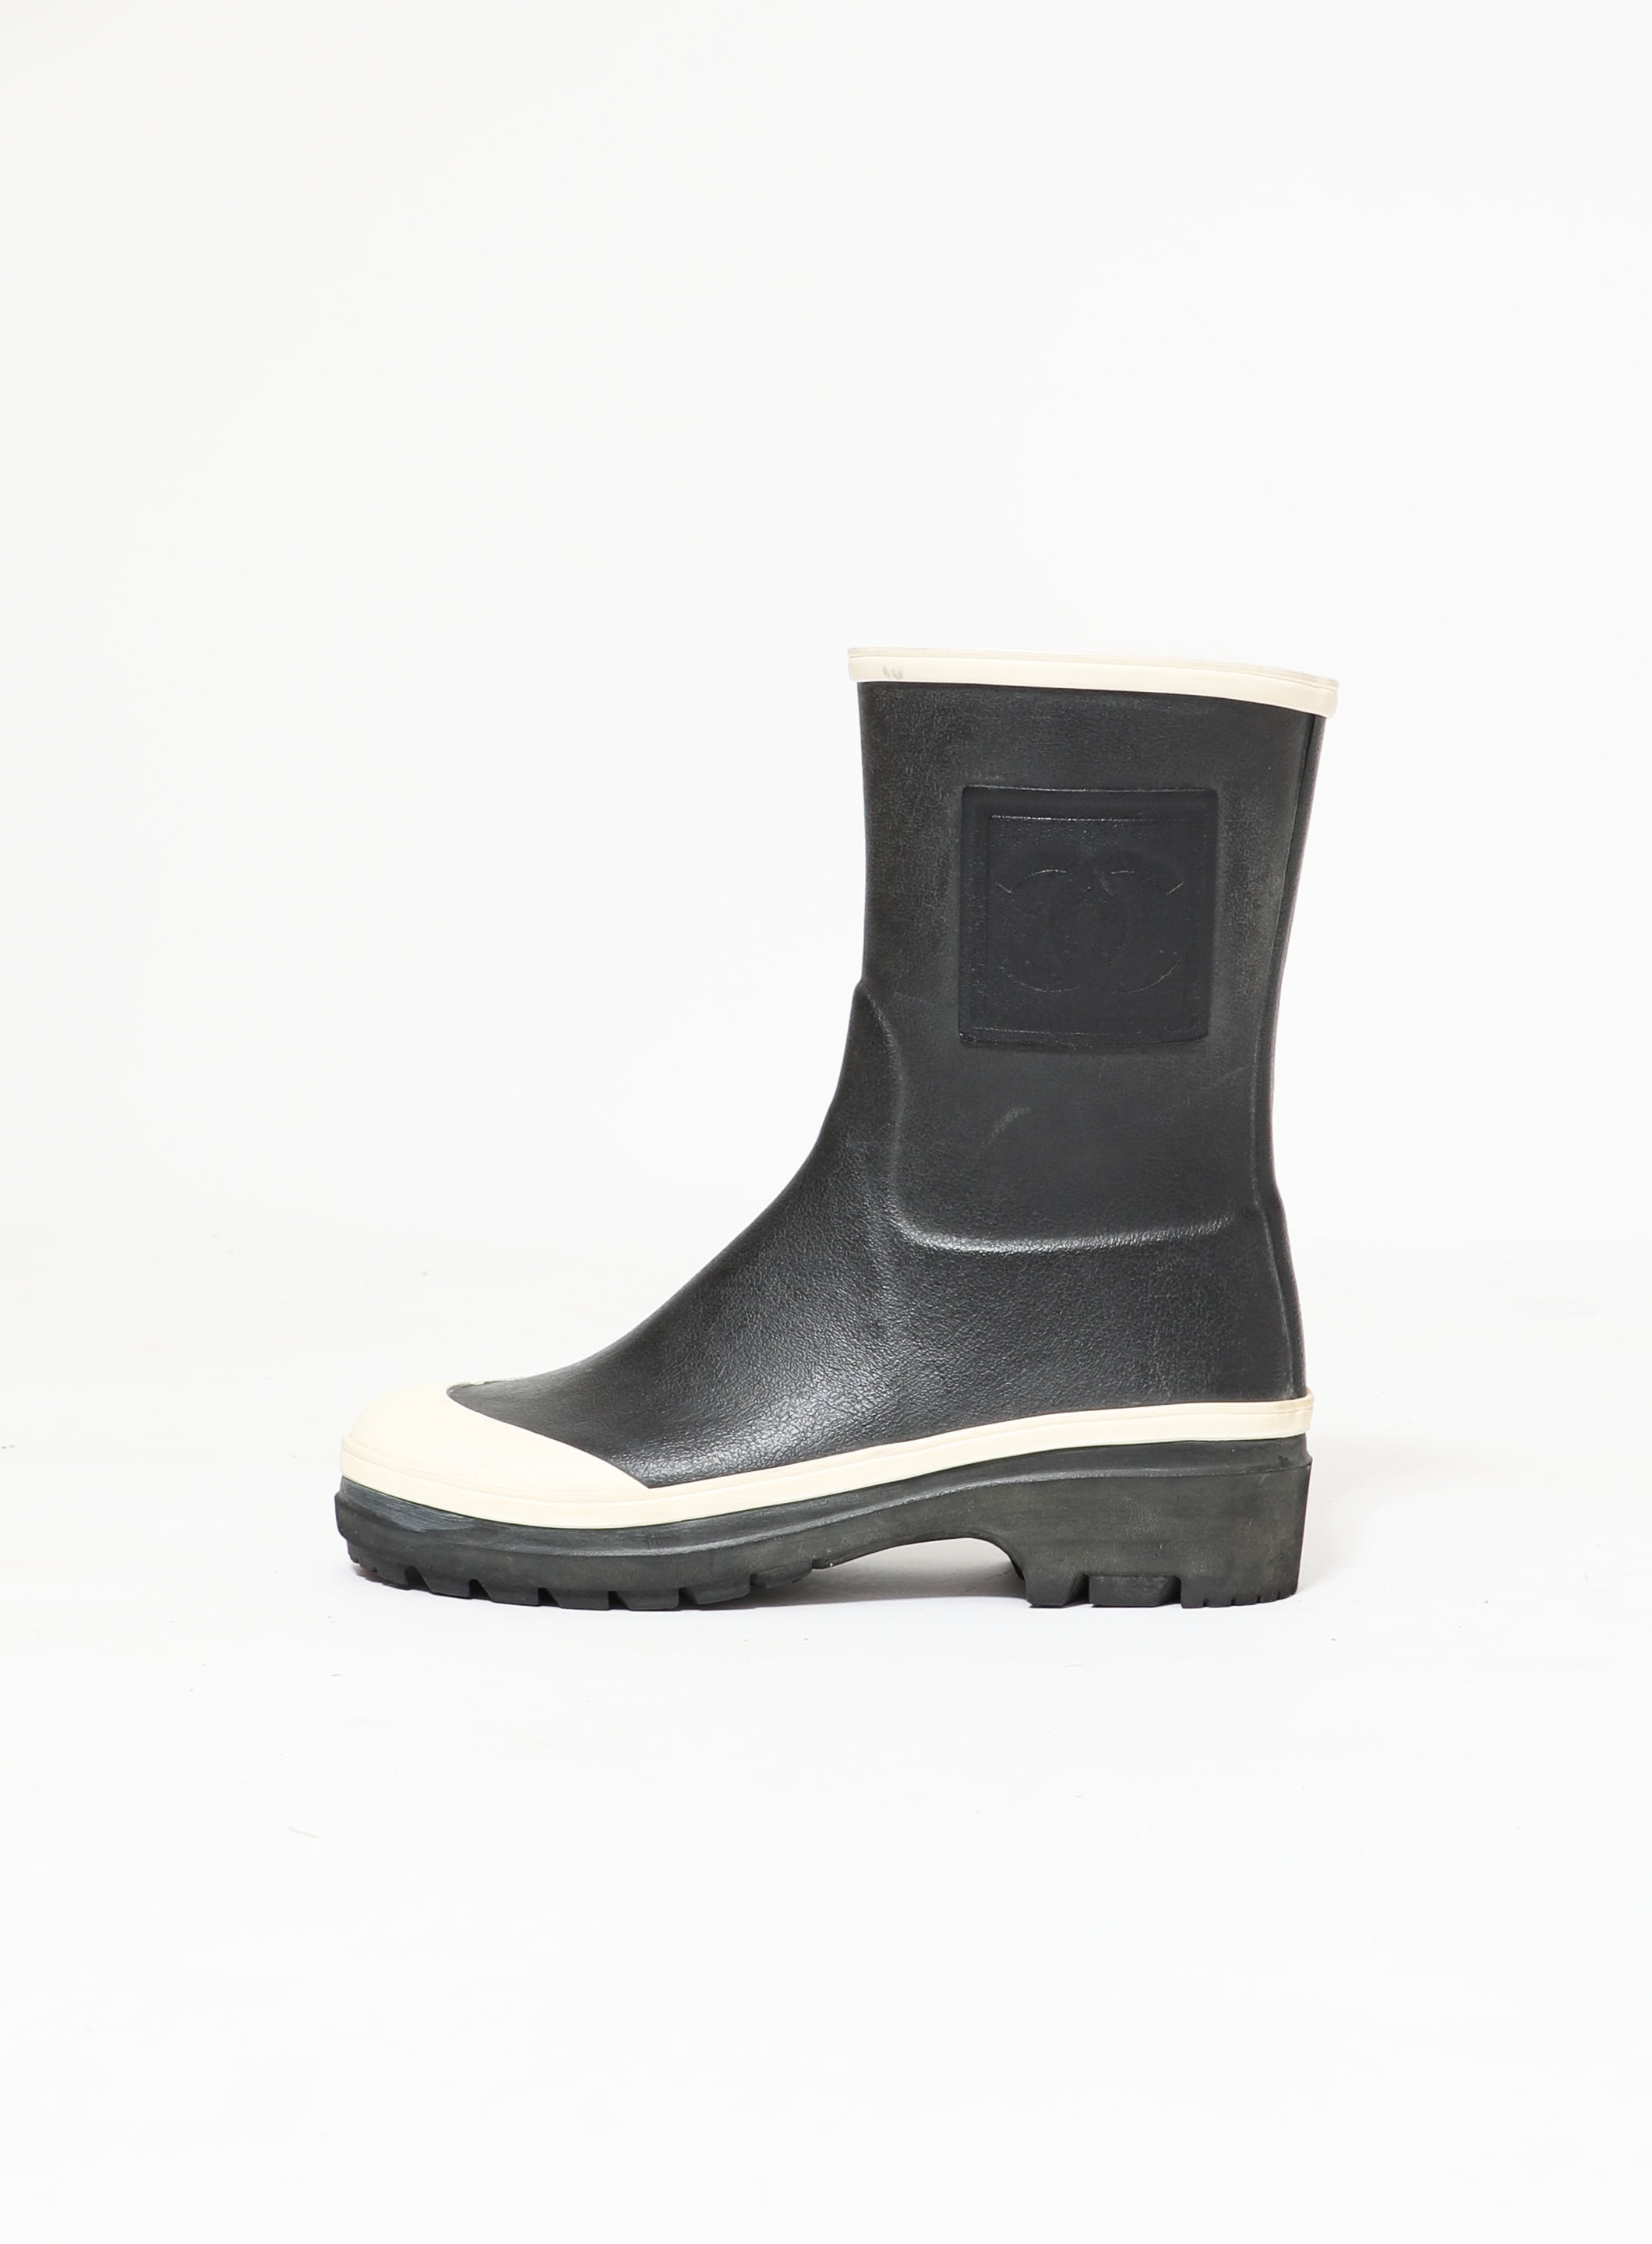 CC' Bi-Color Rain Boots, Authentic & Vintage